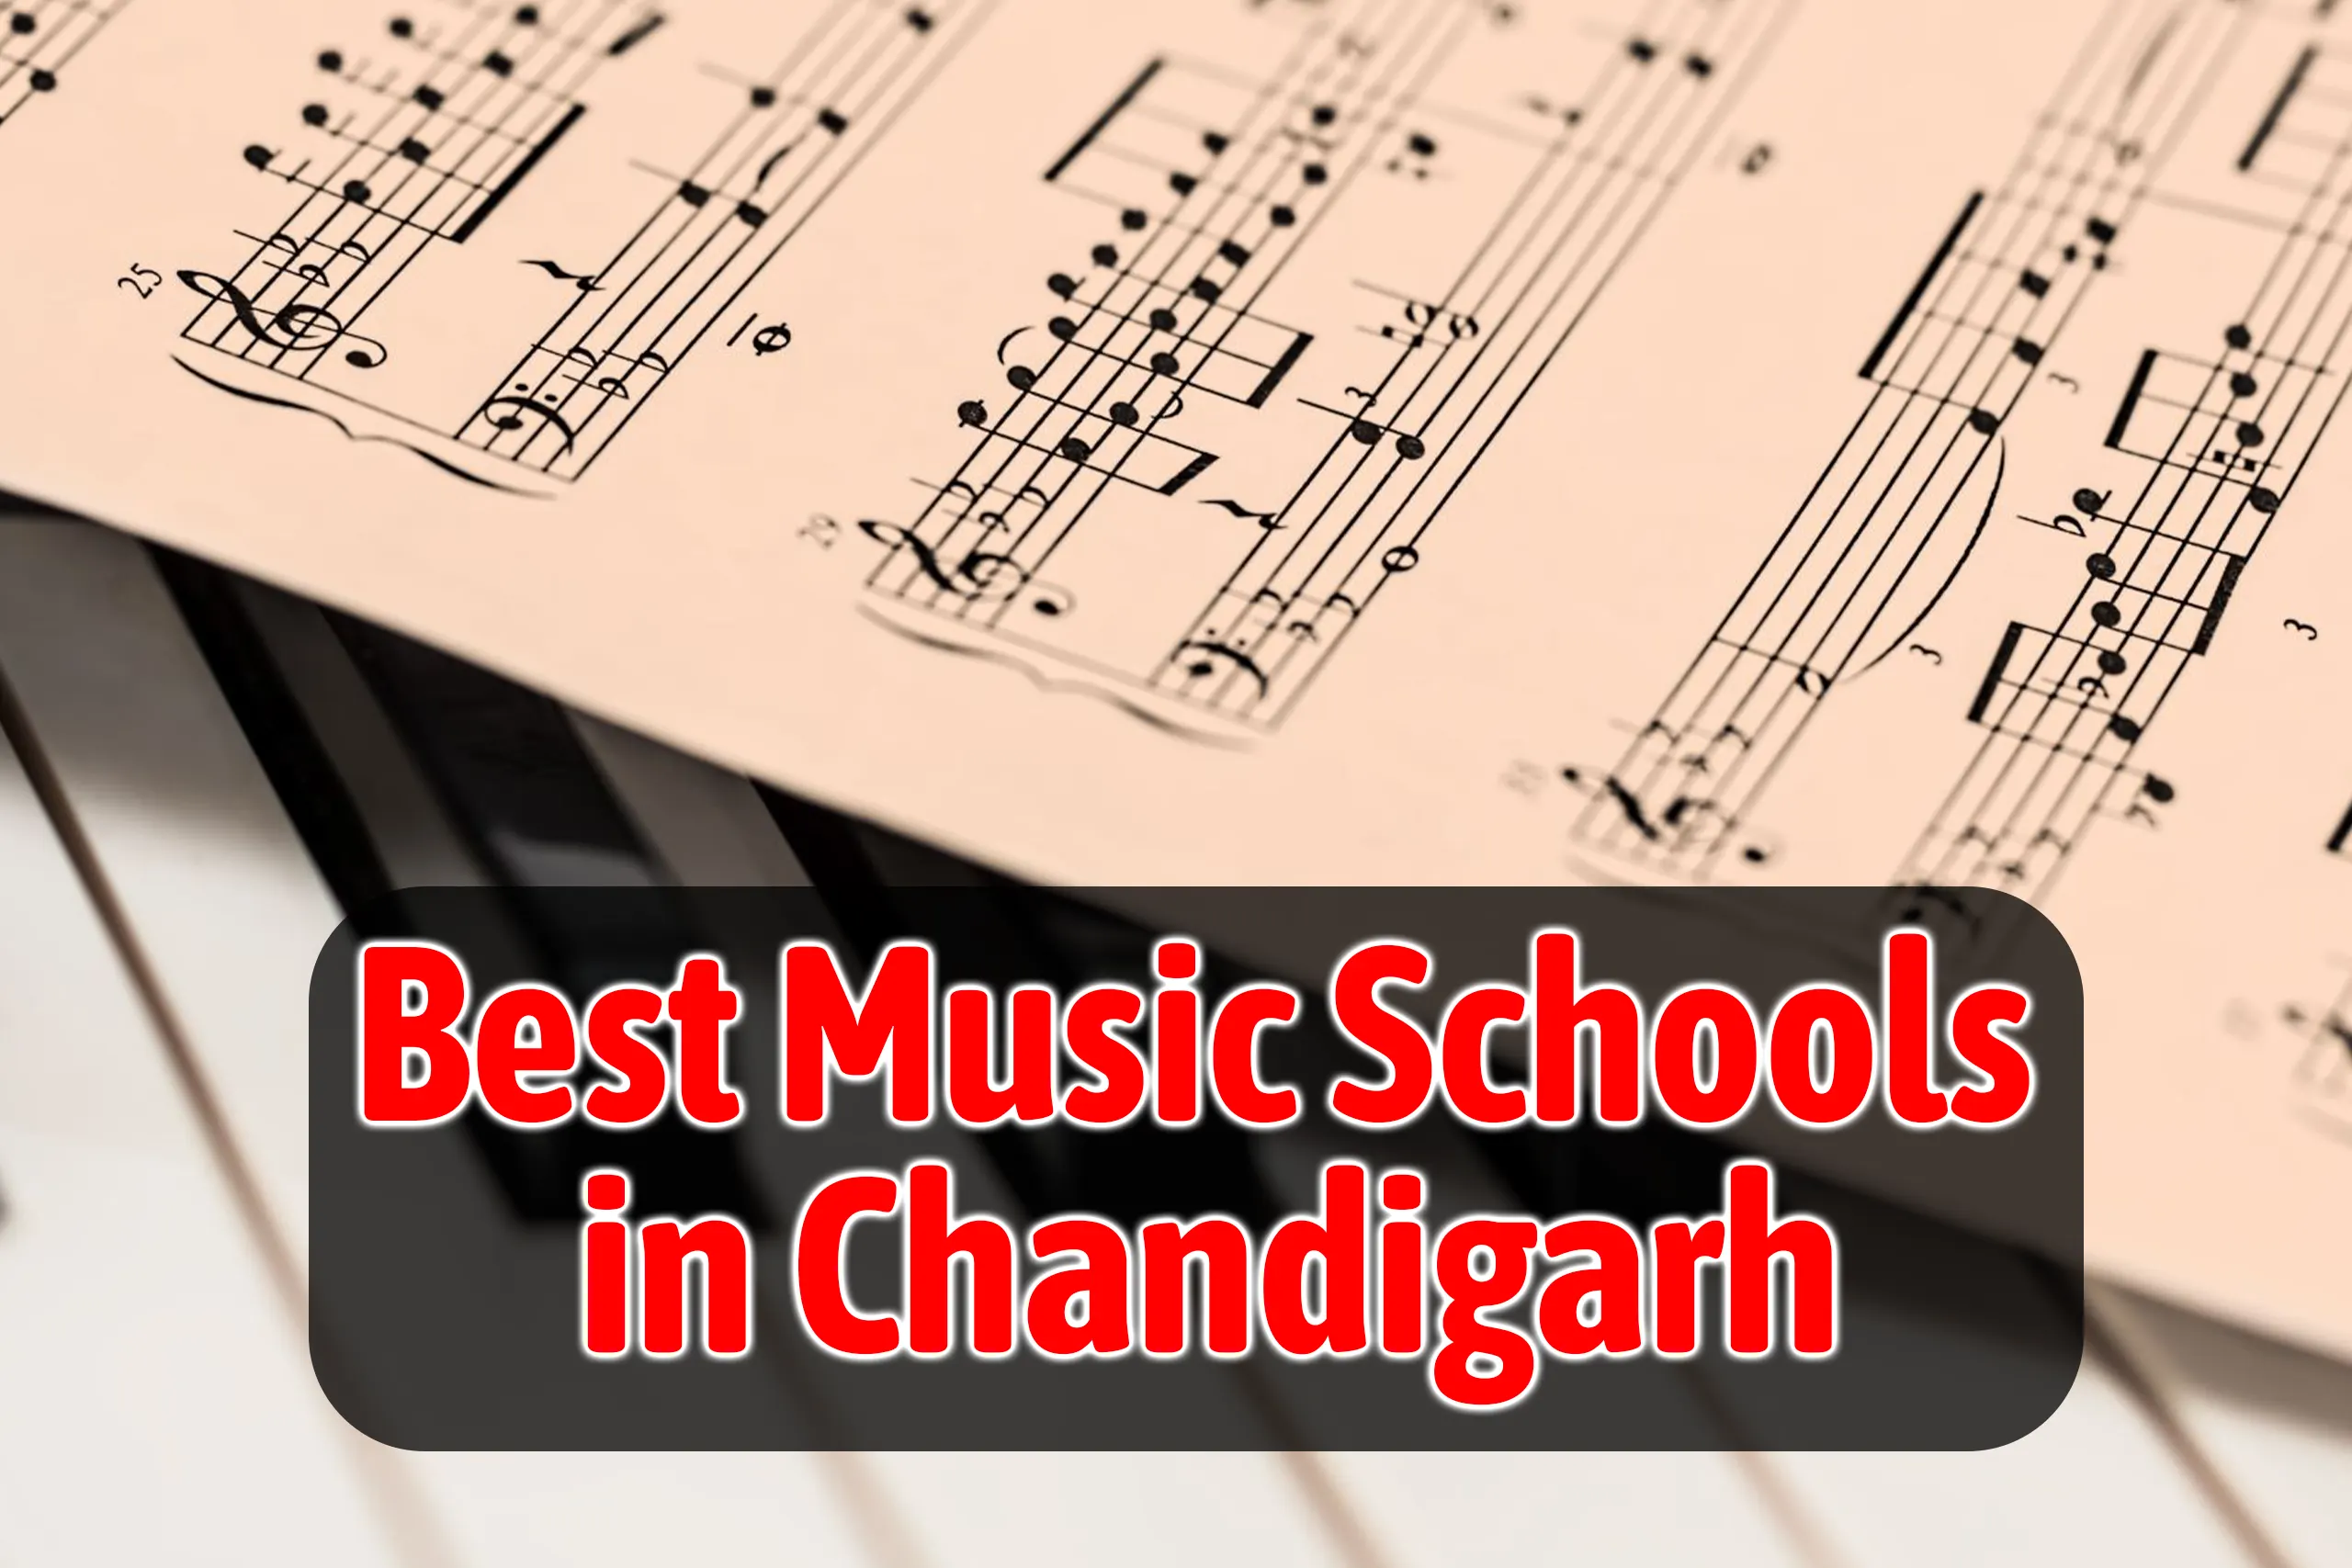 3 Best Music Schools in Chandigarh